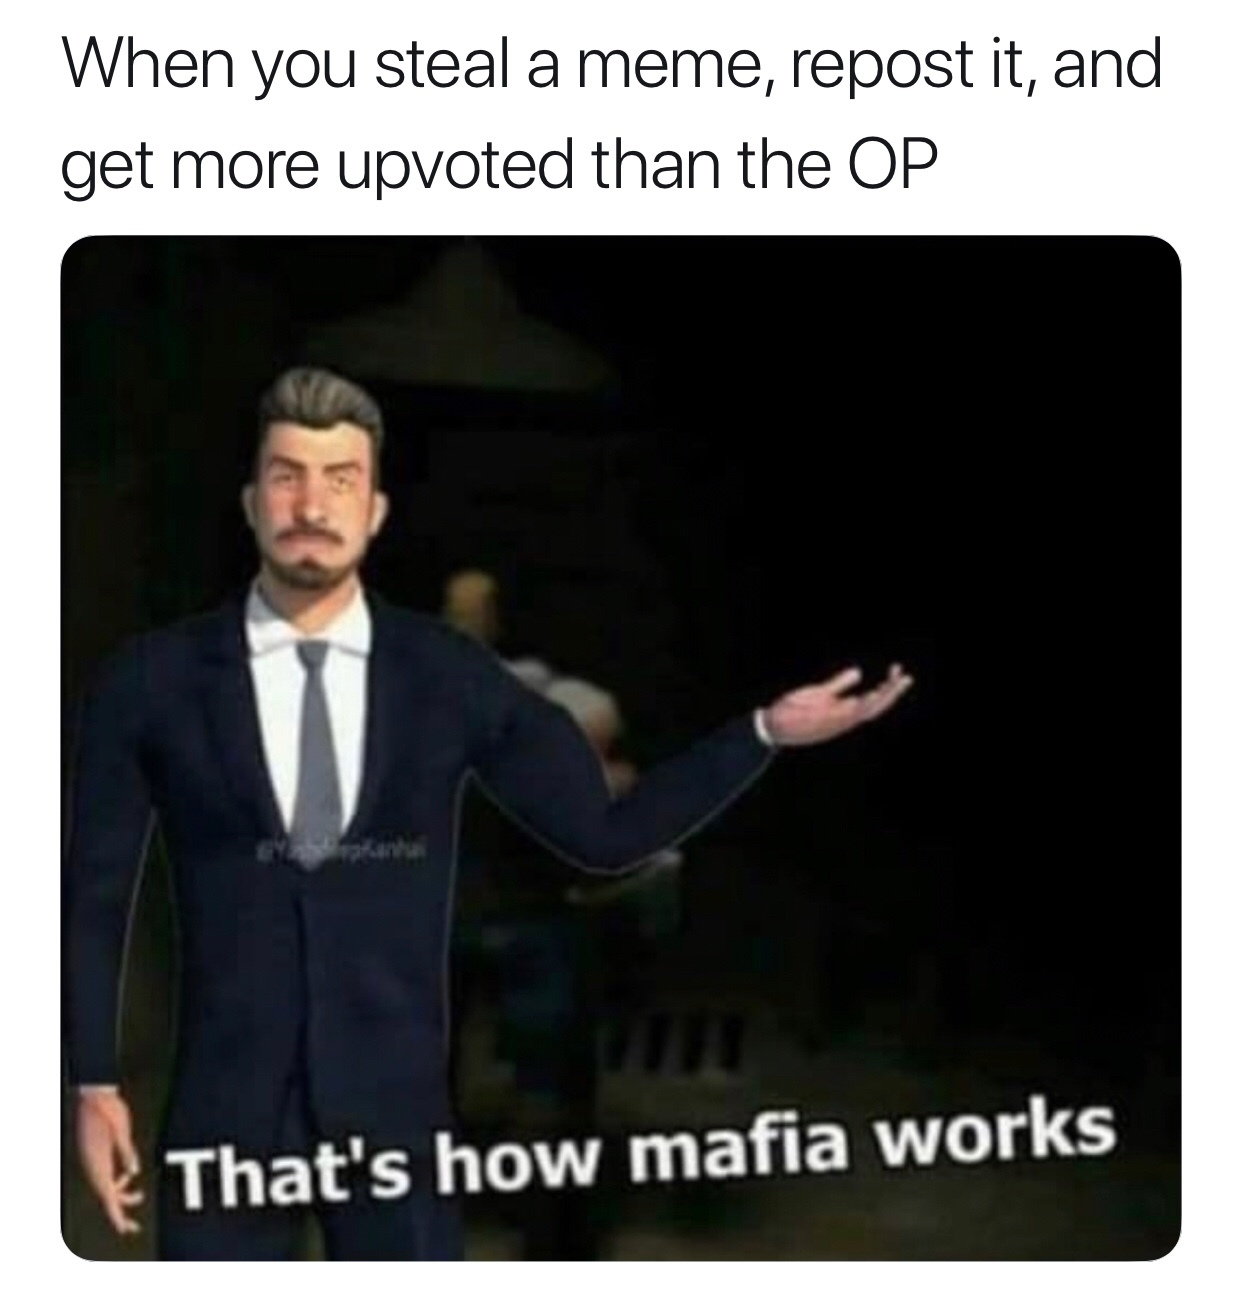 that’s how mafia works - meme